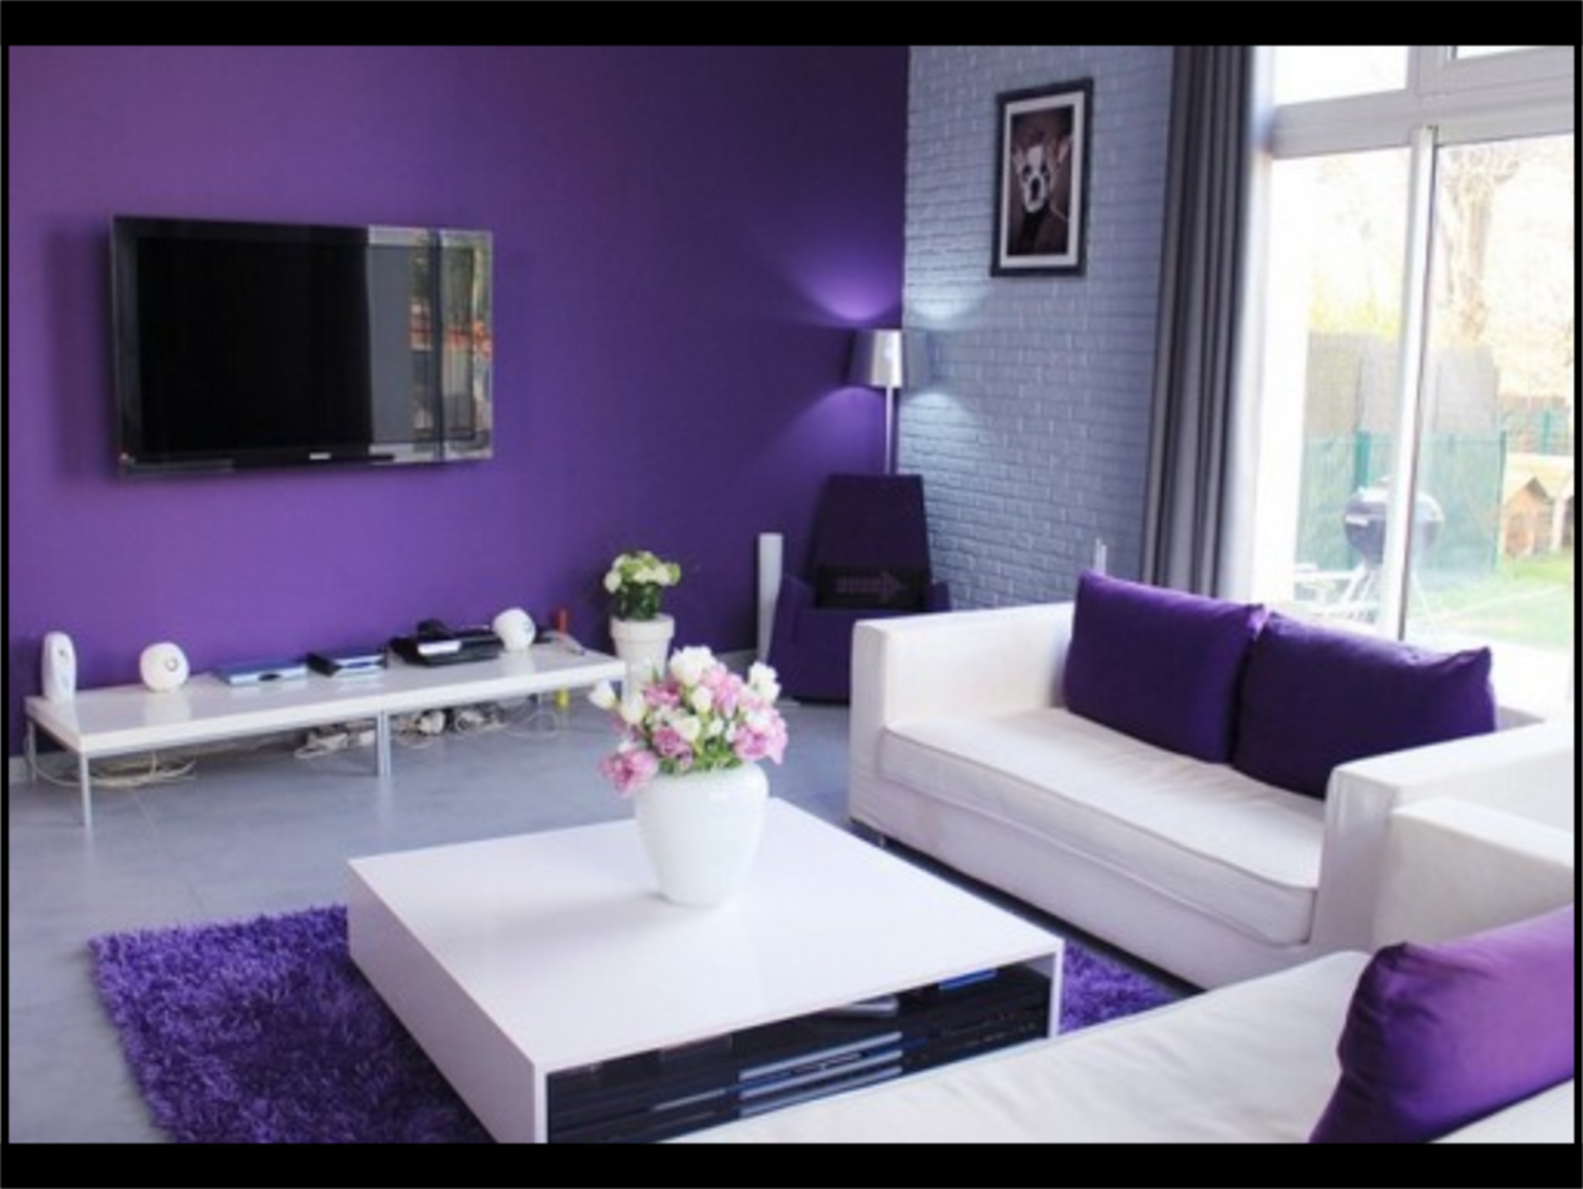 Desain rumah minimalis dengan cat warna ungu